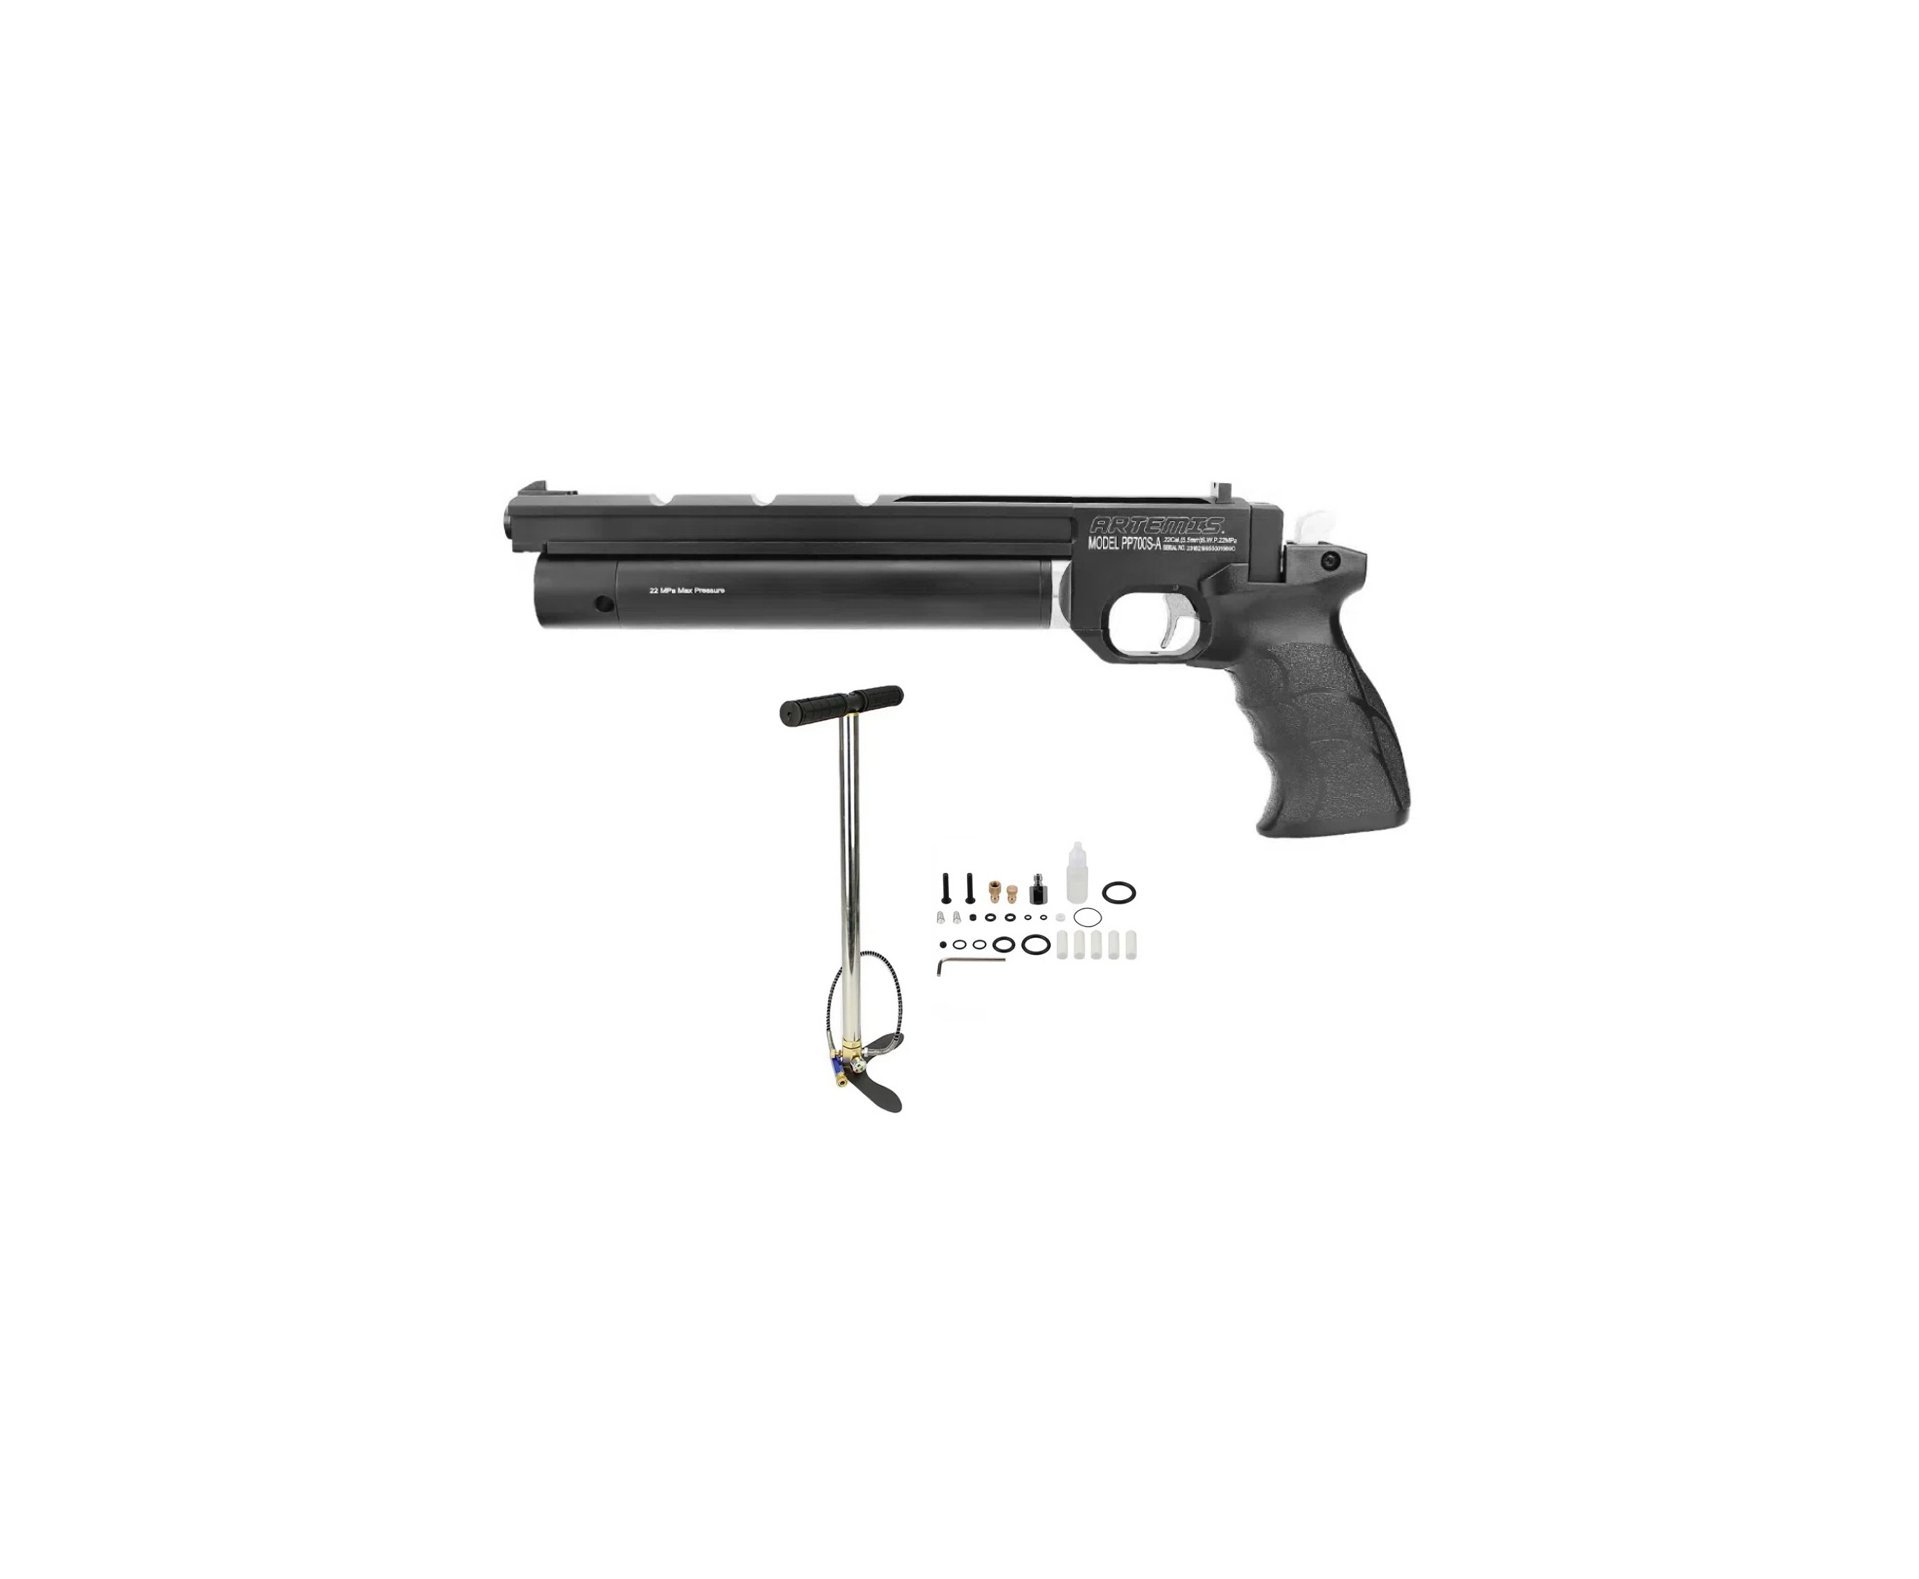 Pistola De Pressão Pcp Pp700s-a Olimpic 4.5mm Artemis + Bomba